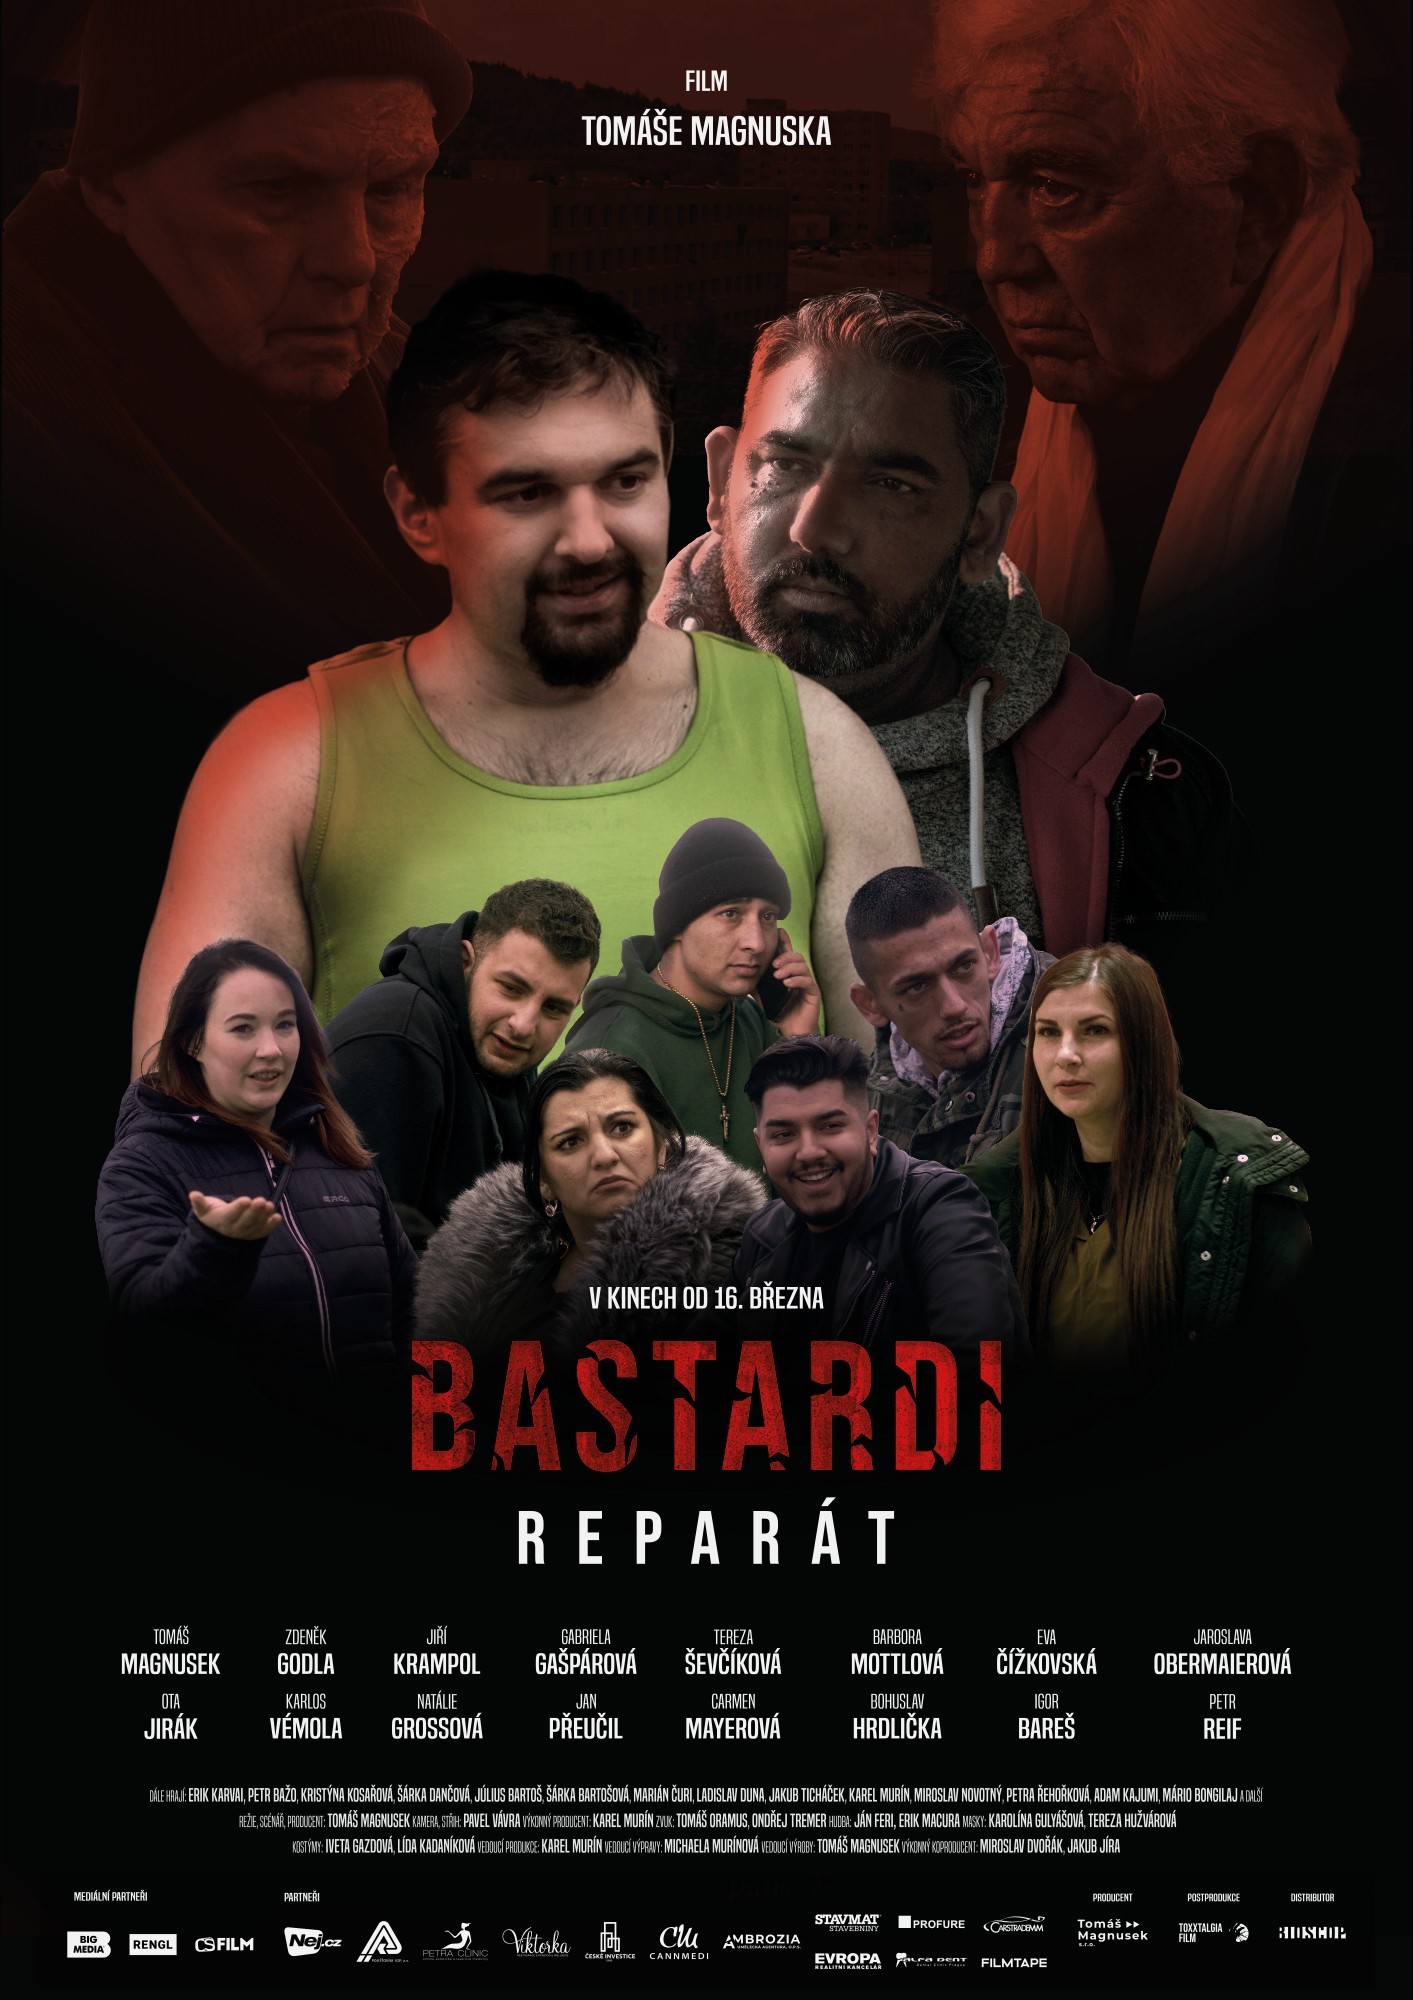 Plakát BASTARDI: REPARÁT